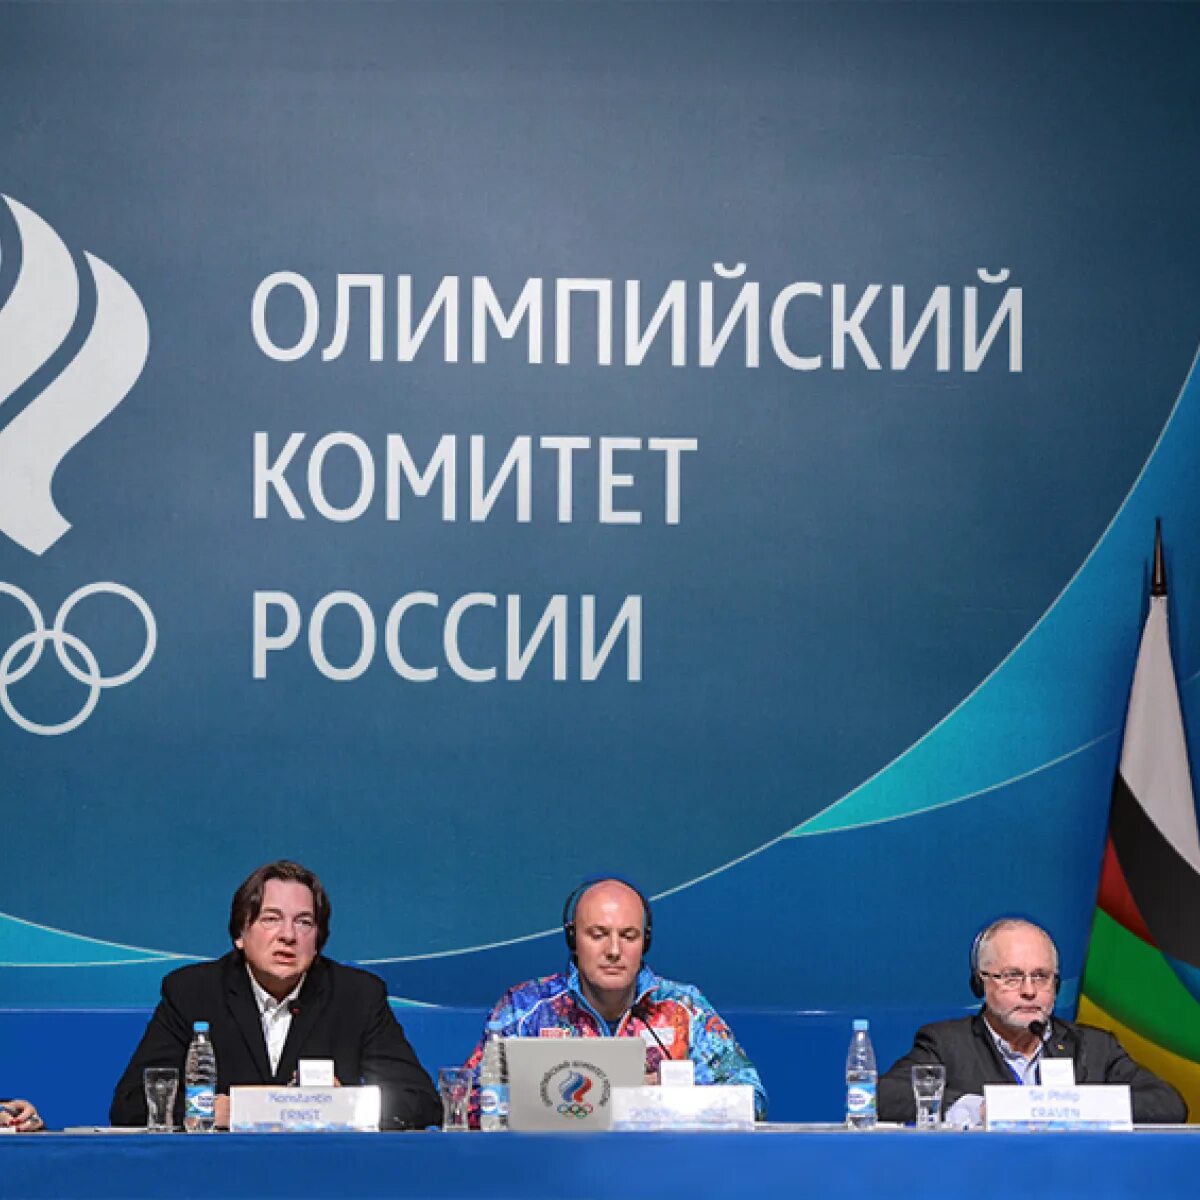 Деятельность олимпийского комитета россии